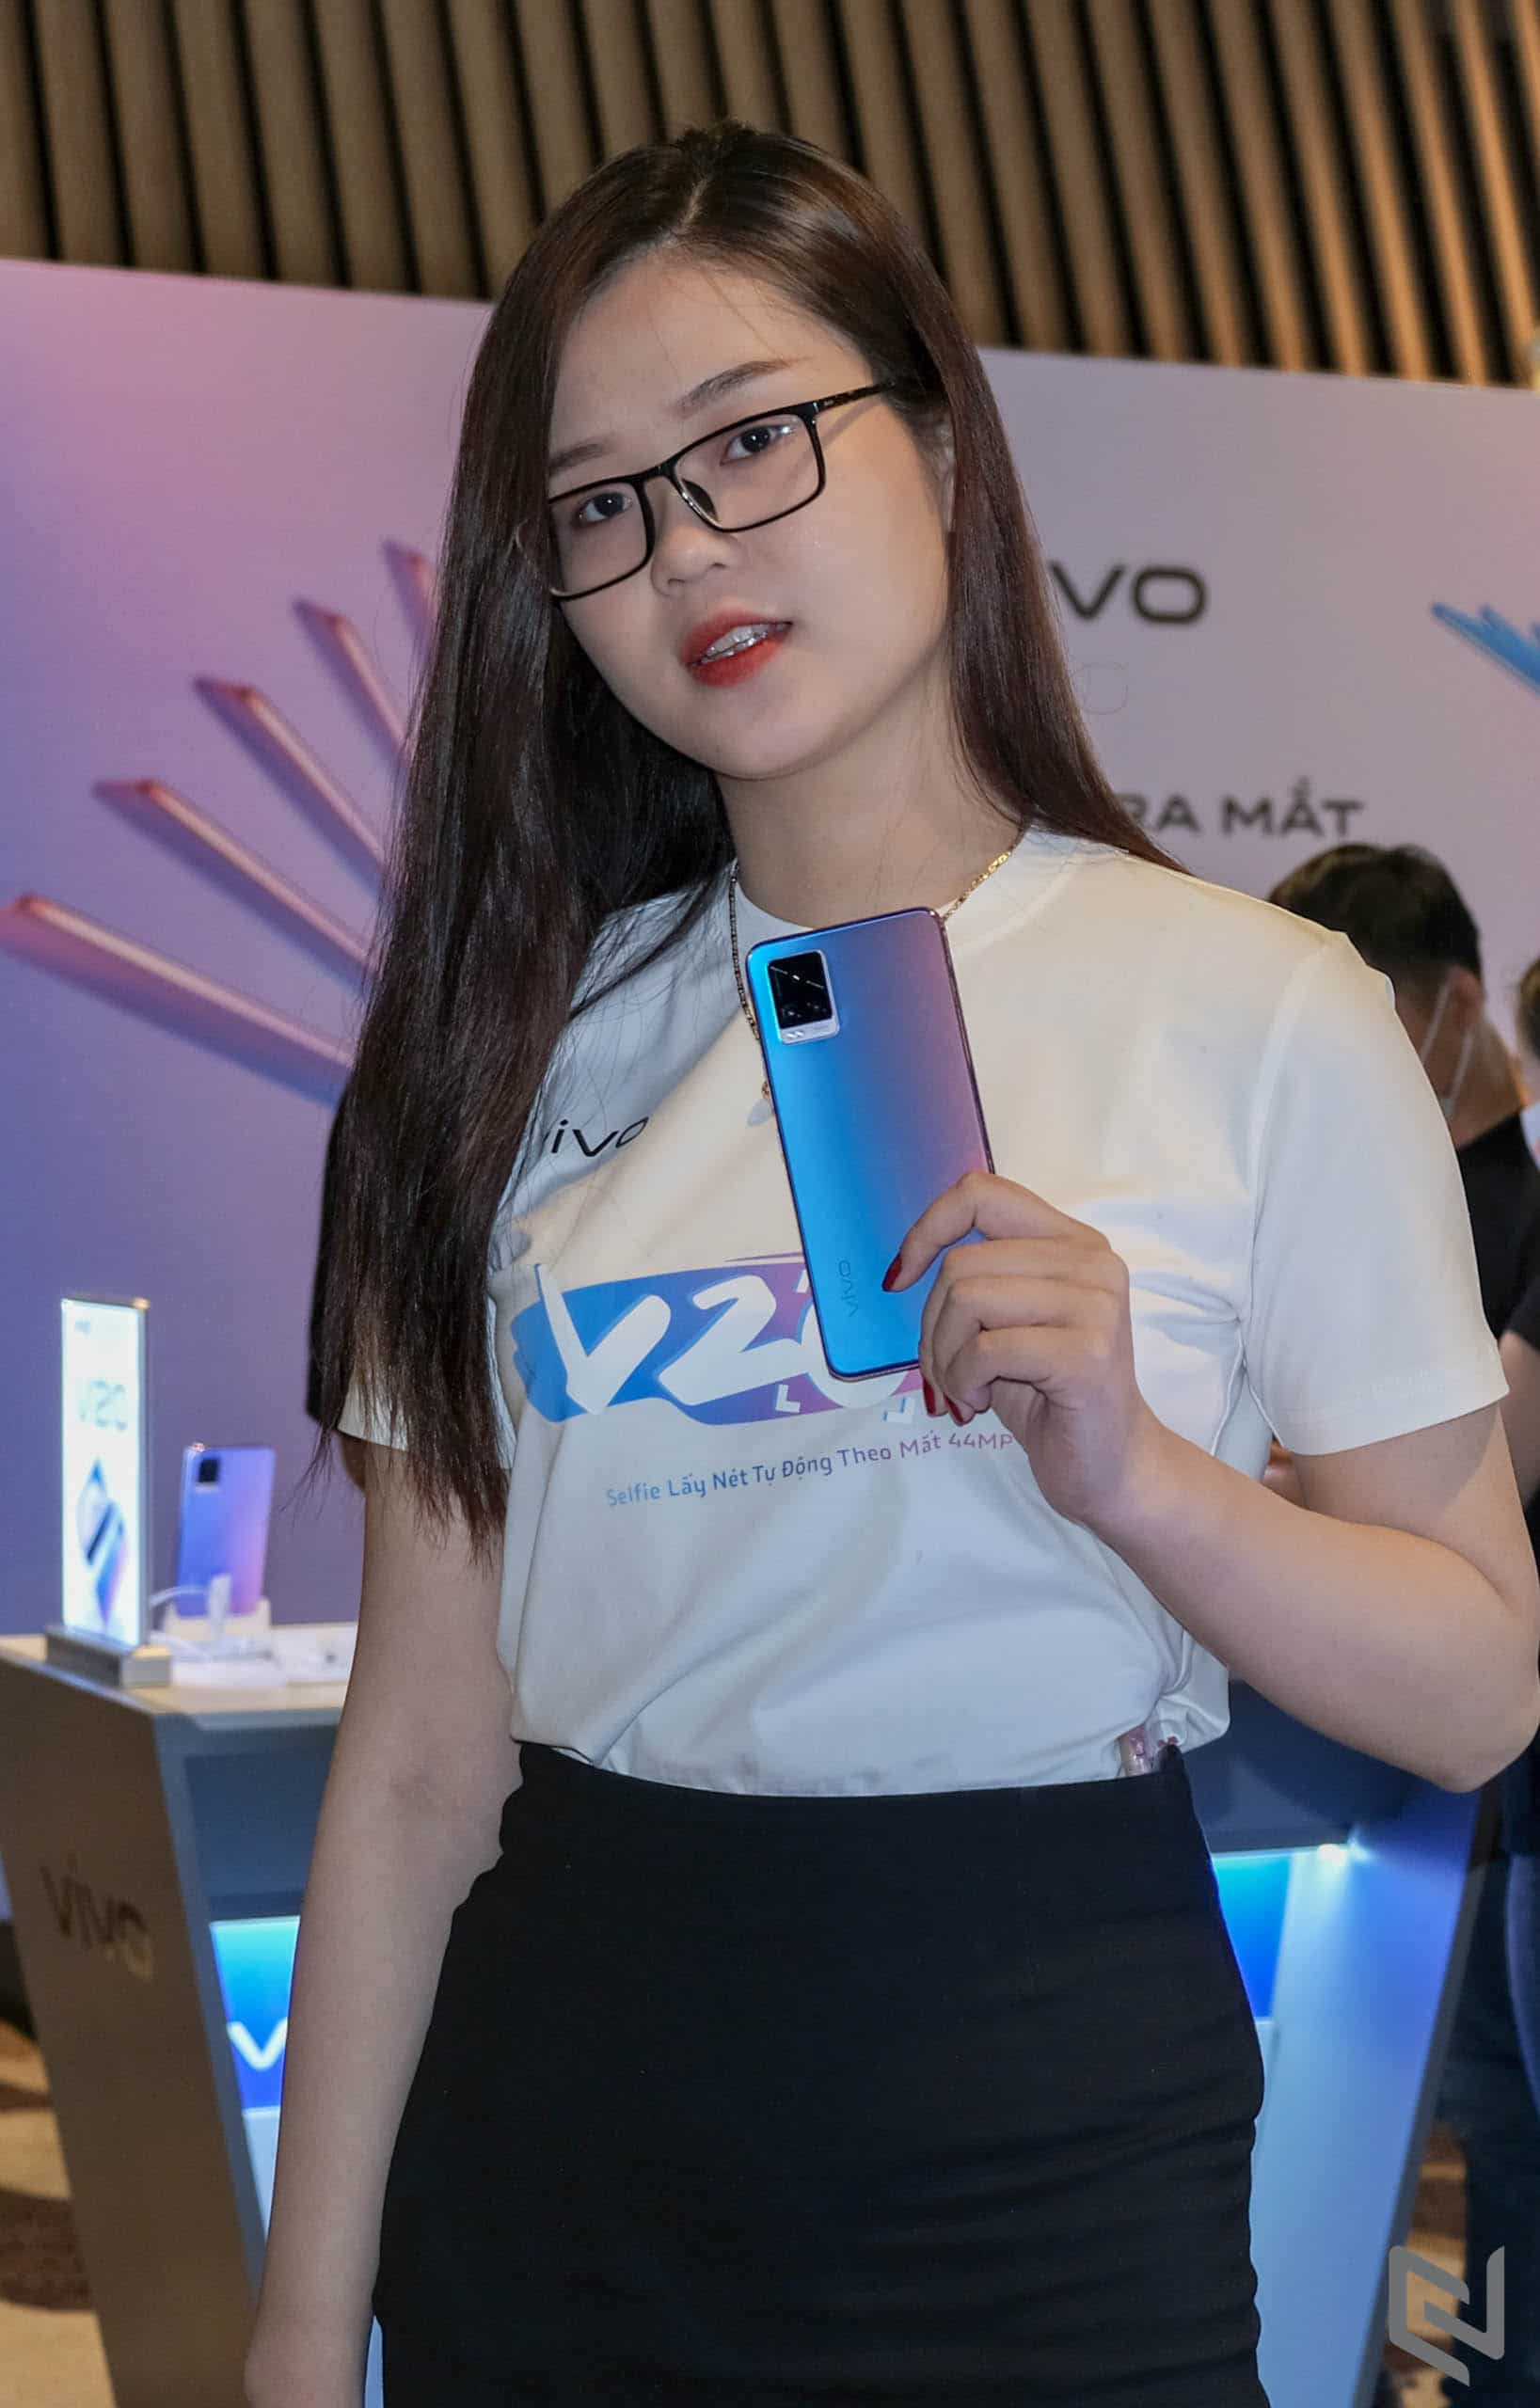 vivo V20 lên kệ thị trường Việt, giá chính thức 8,490,000 VND, camera selfie lấy nét theo mắt